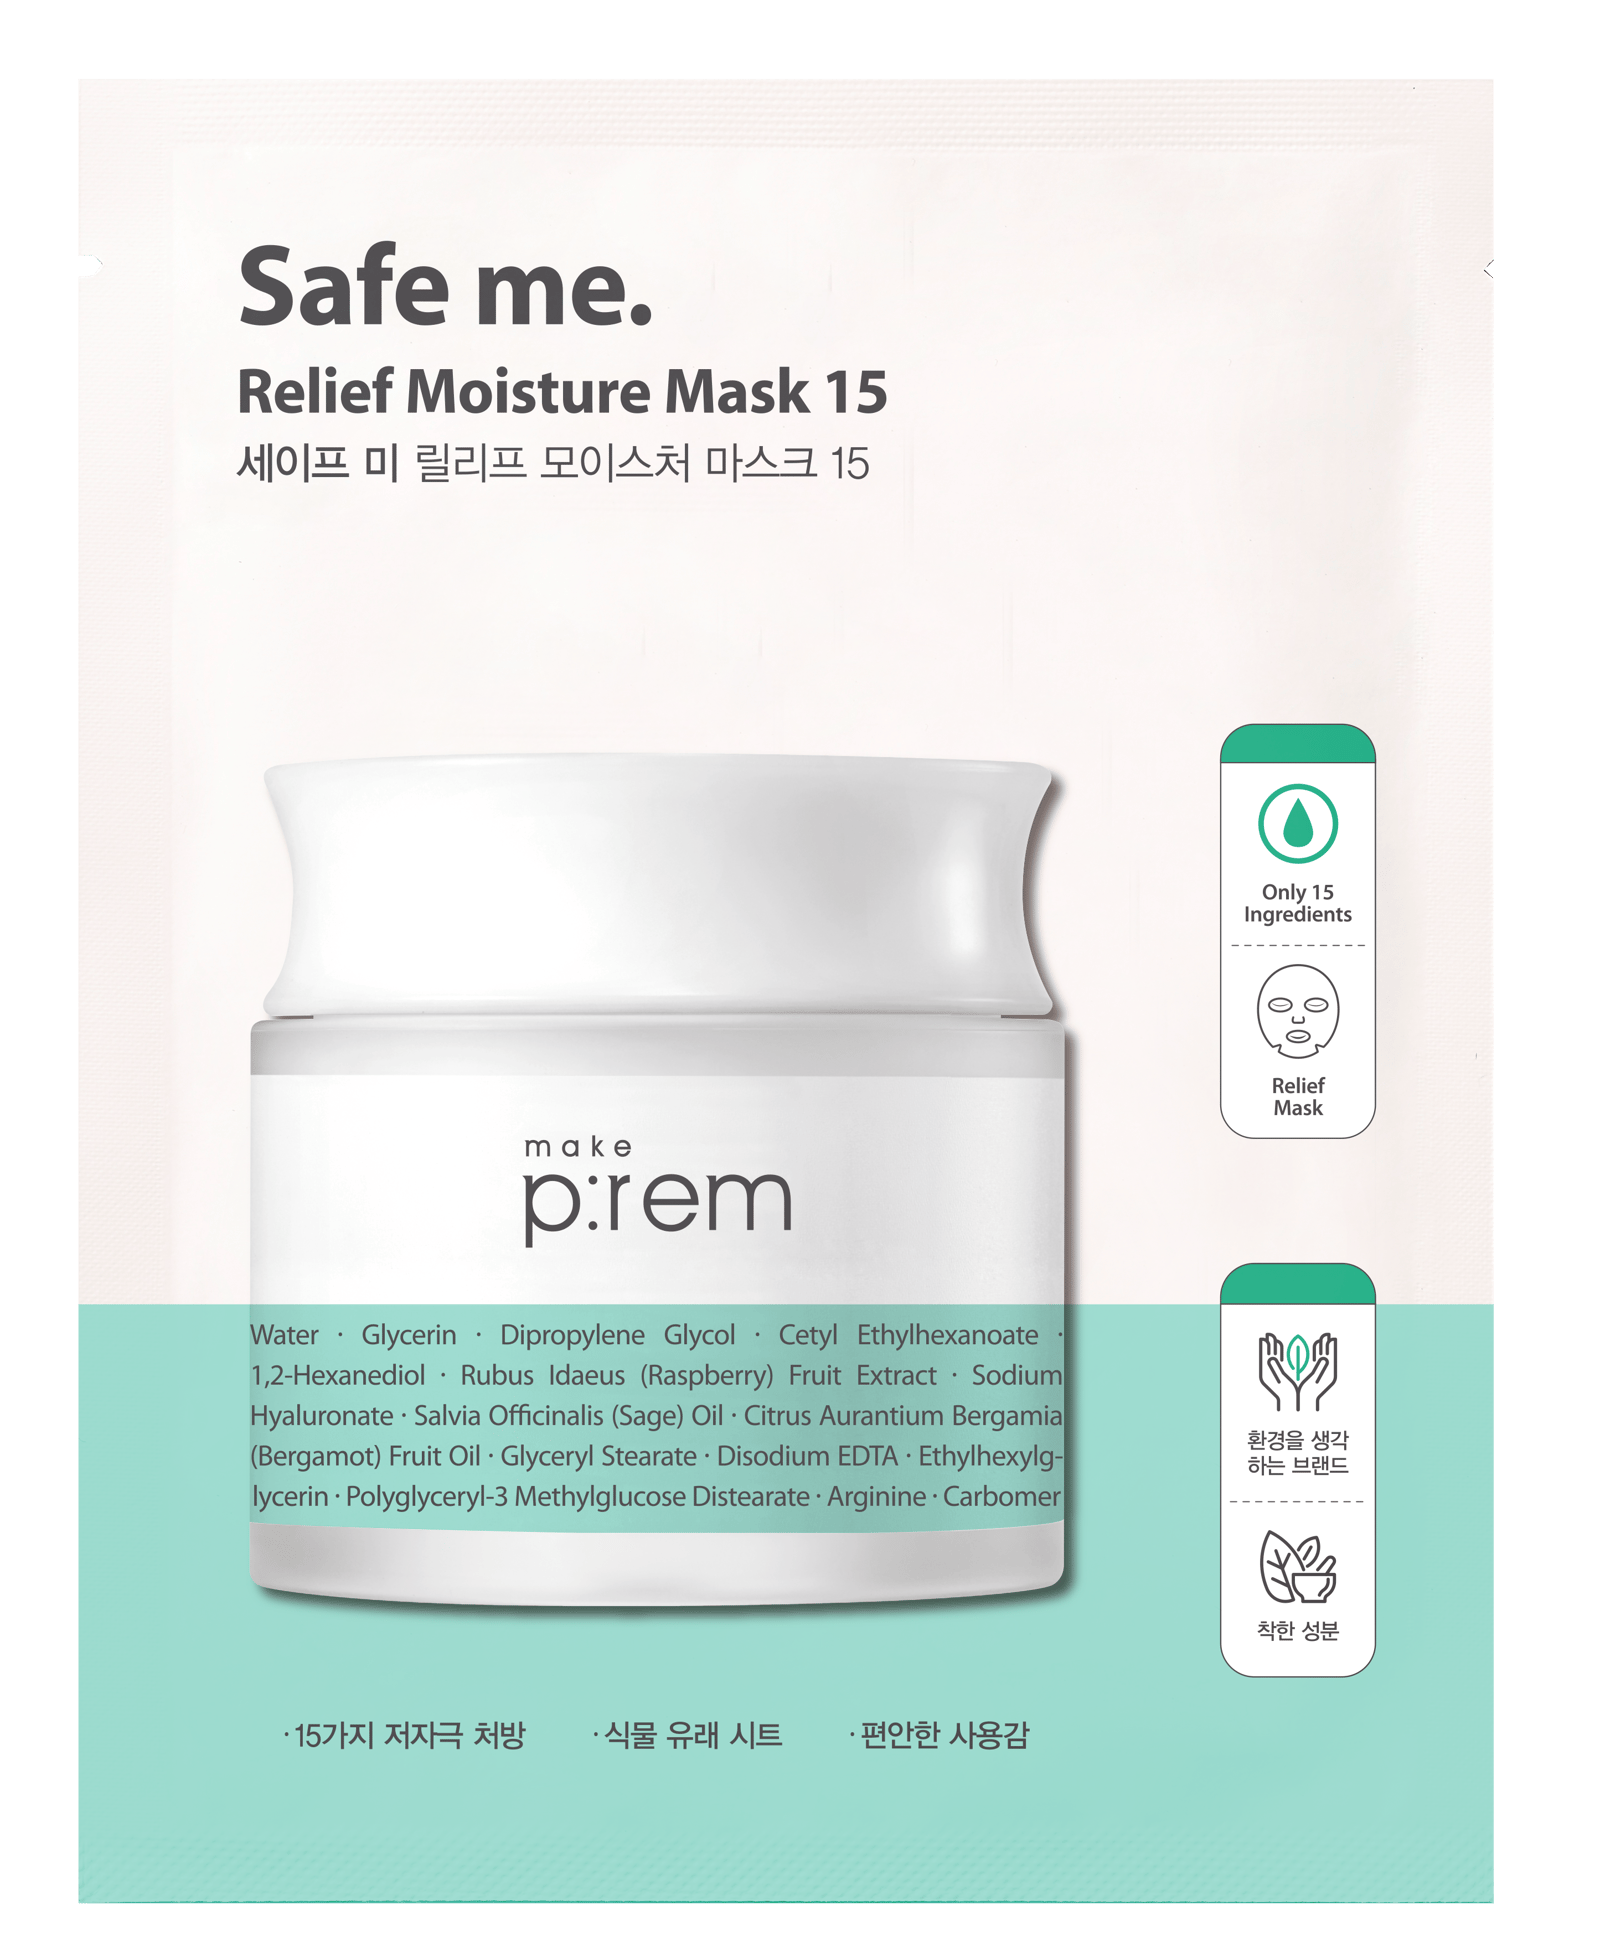 Make p:rem Safe me. Relief moisture mask 15